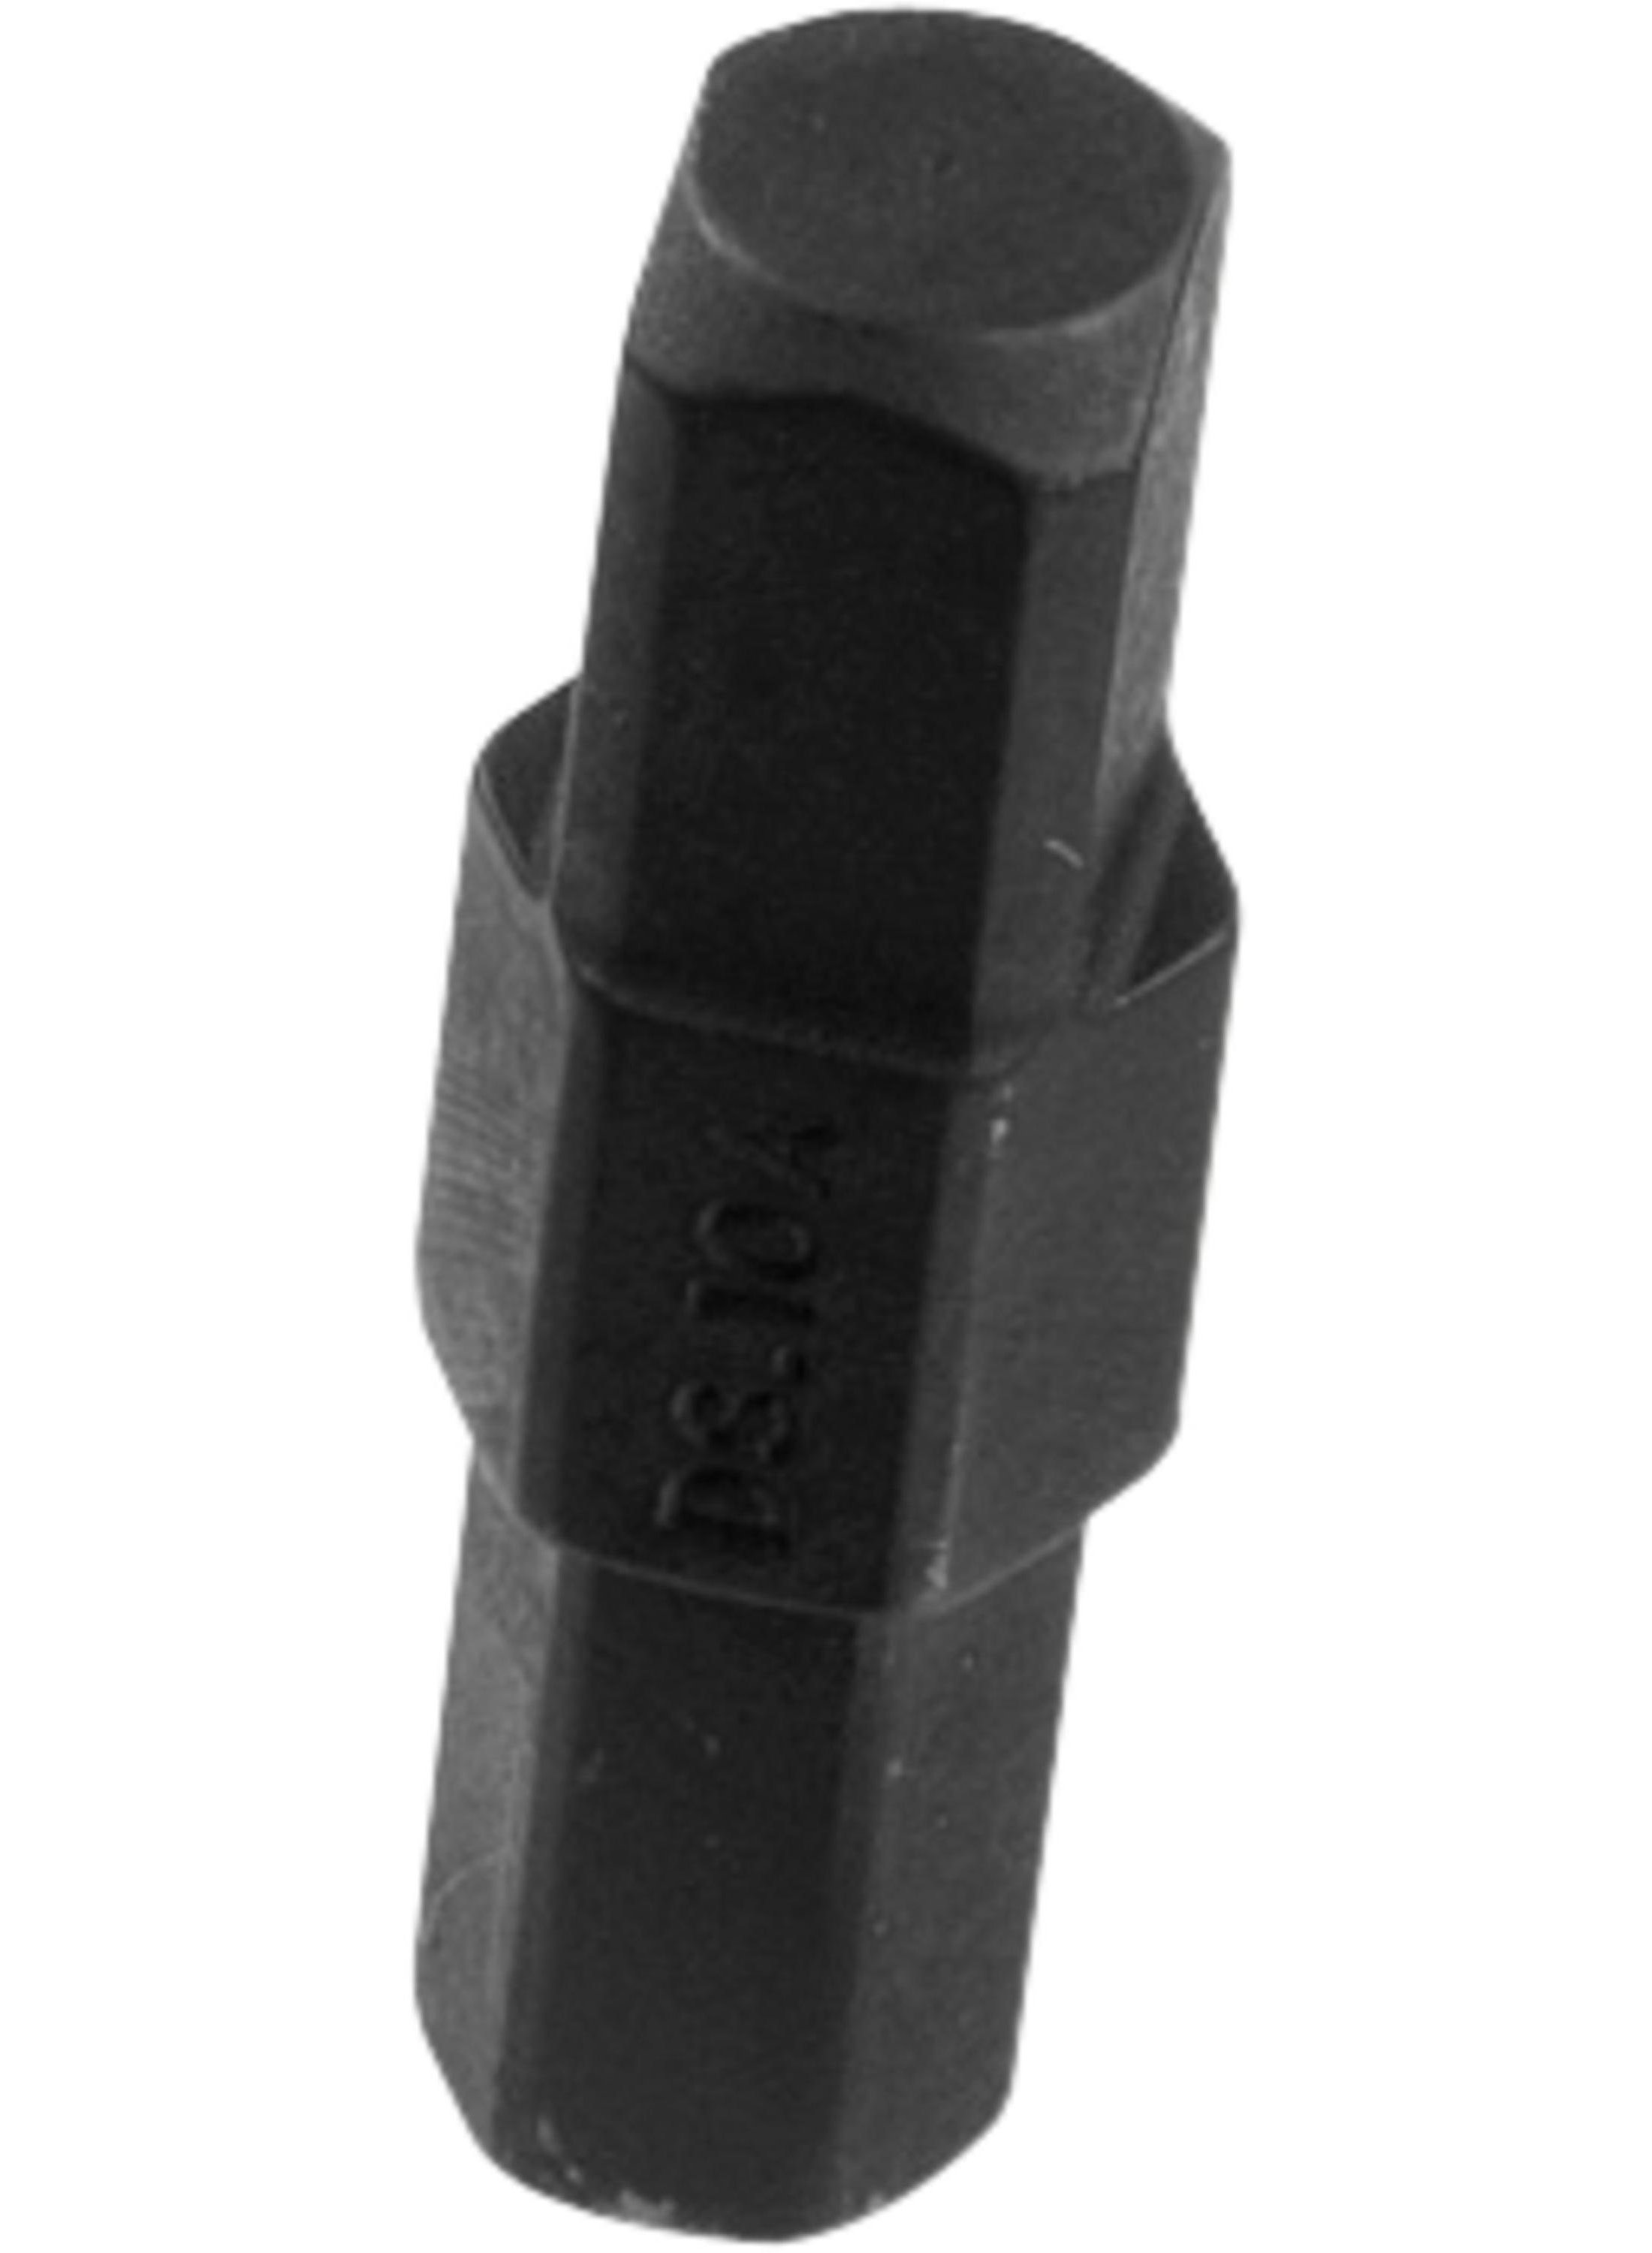 1.DS.10A Flensspreider mac pherson 7,5x9mm